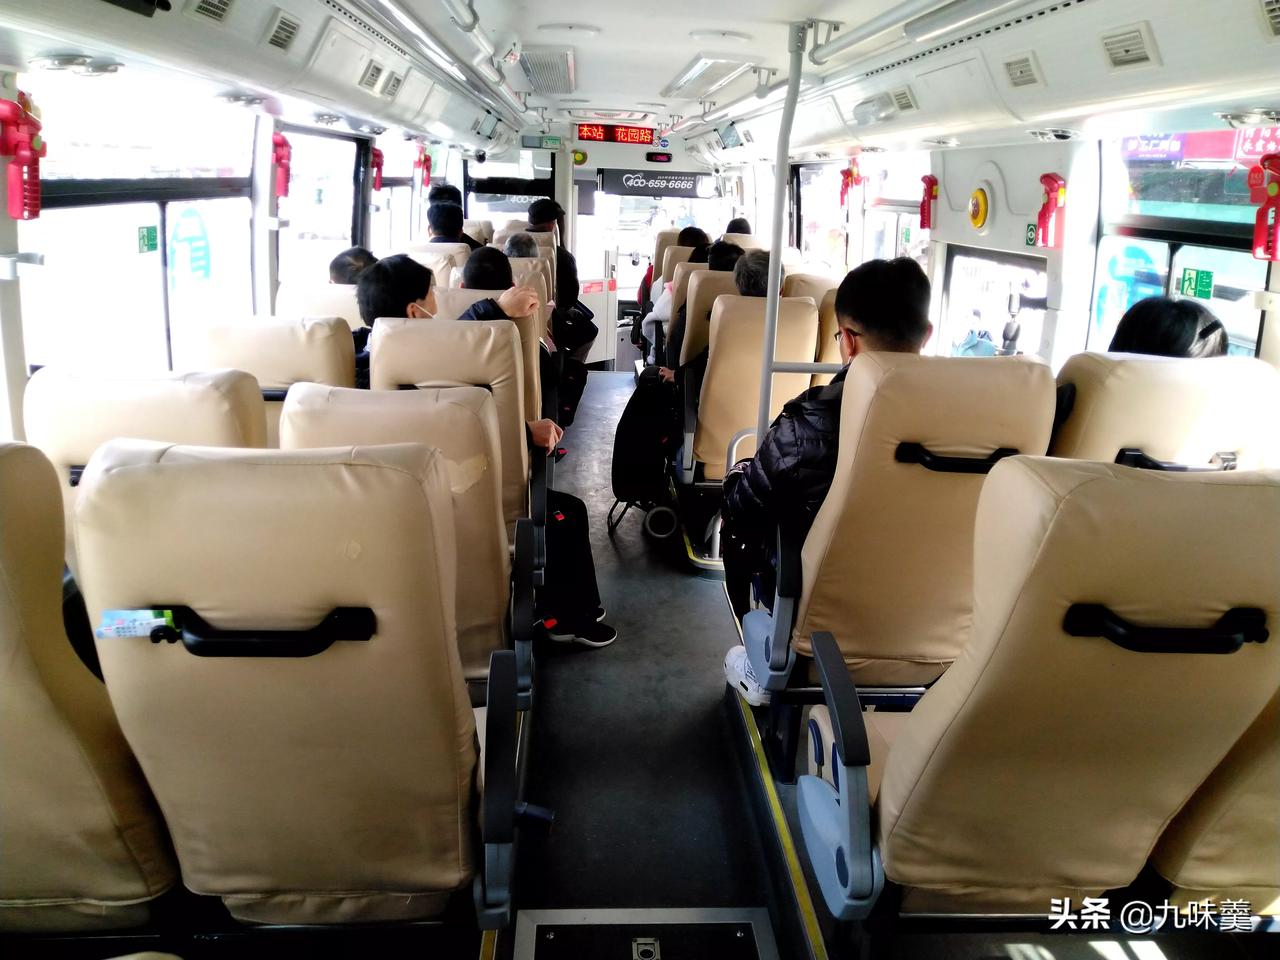 郑州公交车中的大巴车型坐着咋样乘客反映不一回应是否会撤换暂不好说